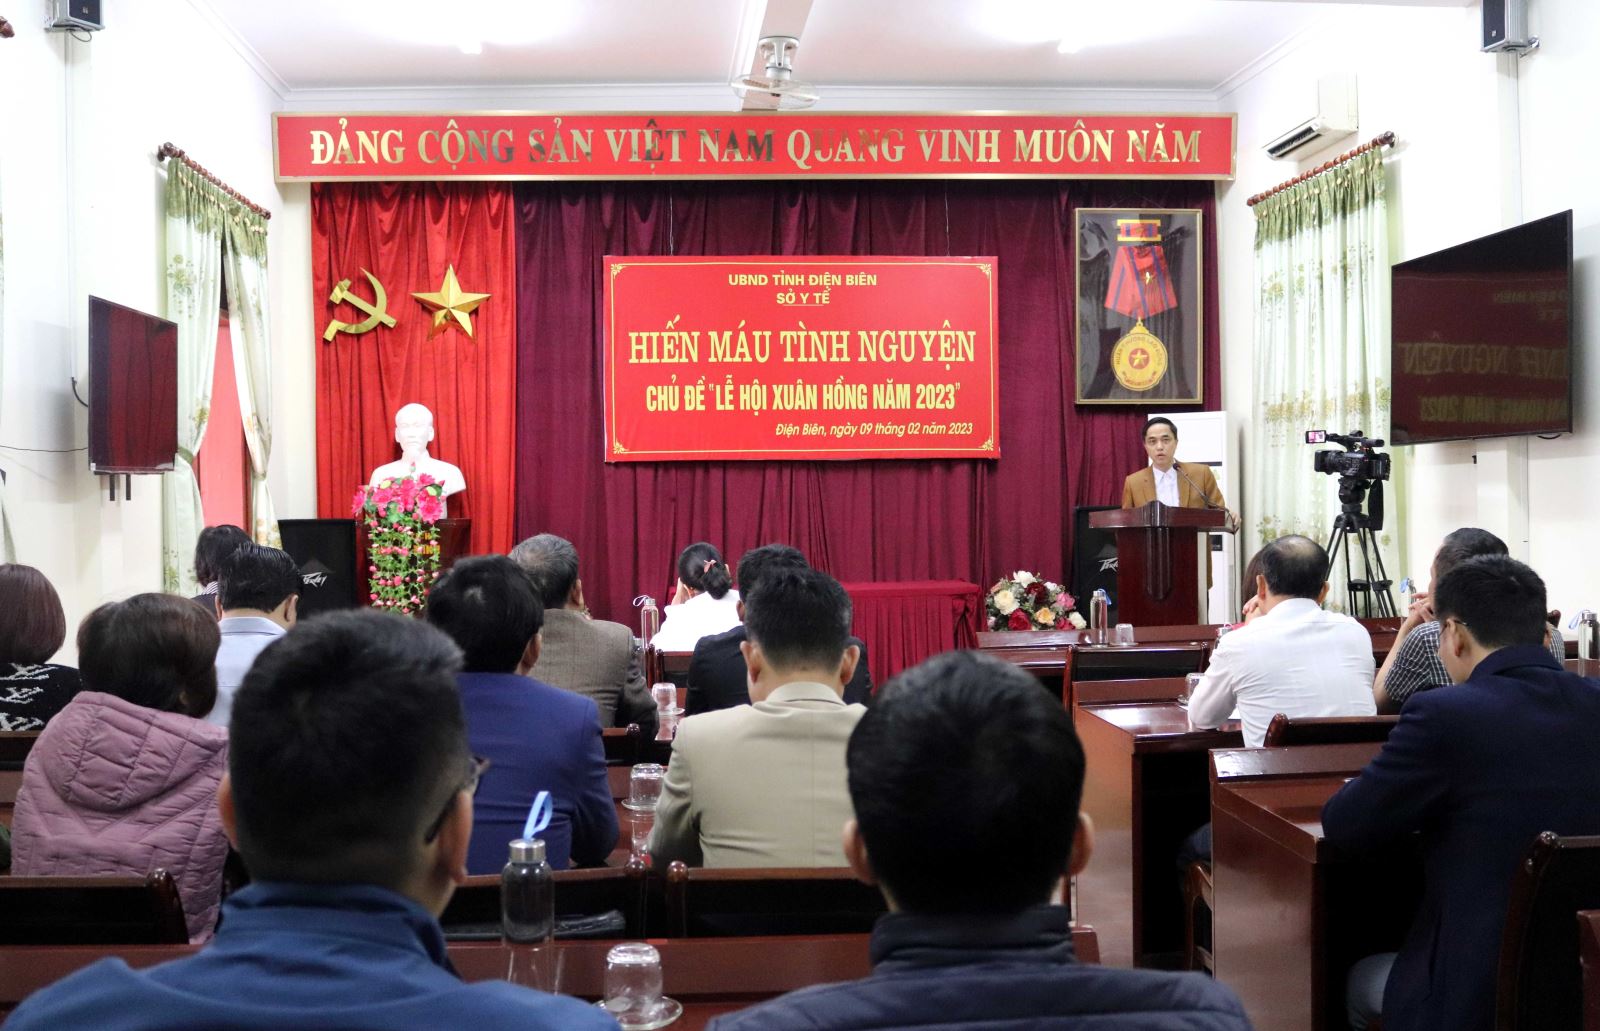 BSCKII. Phạm Văn Mẫn, Phó Giám đốc Sở Y tế phát biểu hưởng ứng Lễ hội Xuân hồng năm 2023